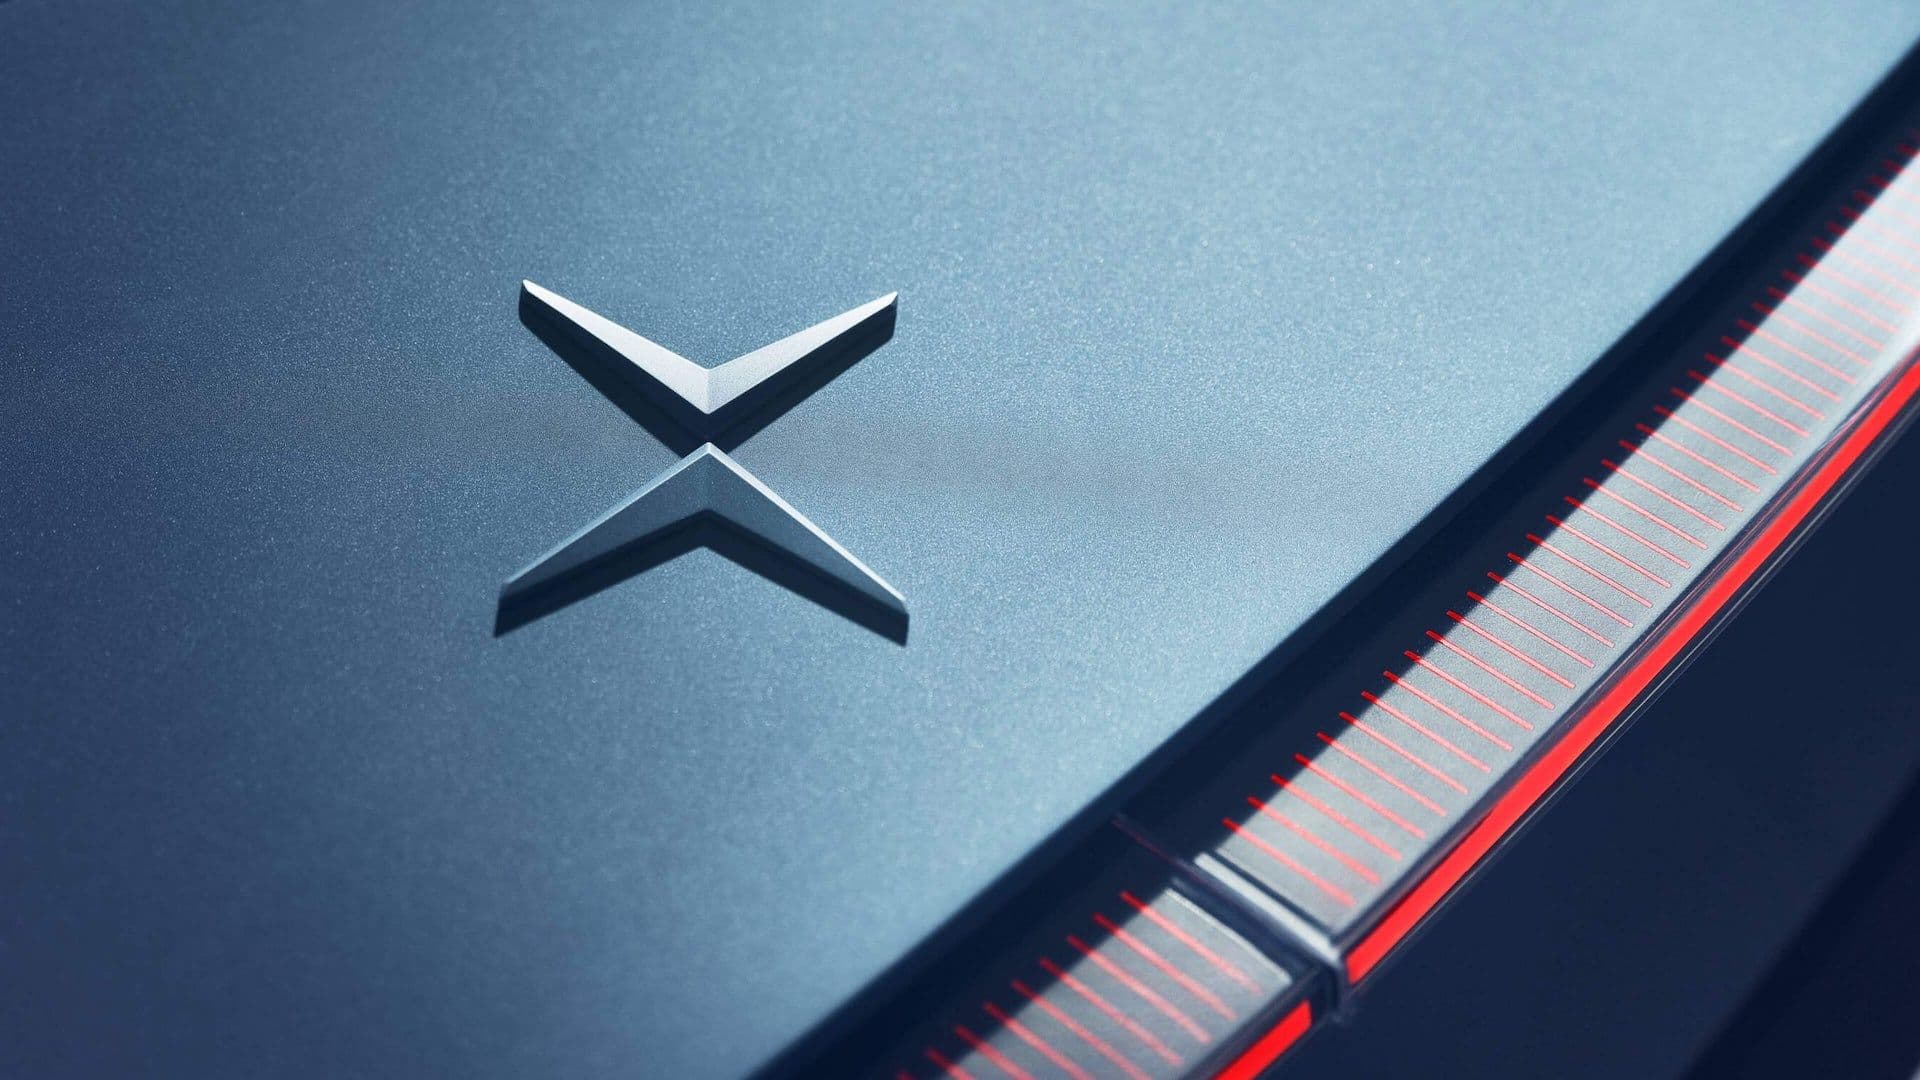 Citroën marque Nouveau logo voiture symbole avec Nom noir